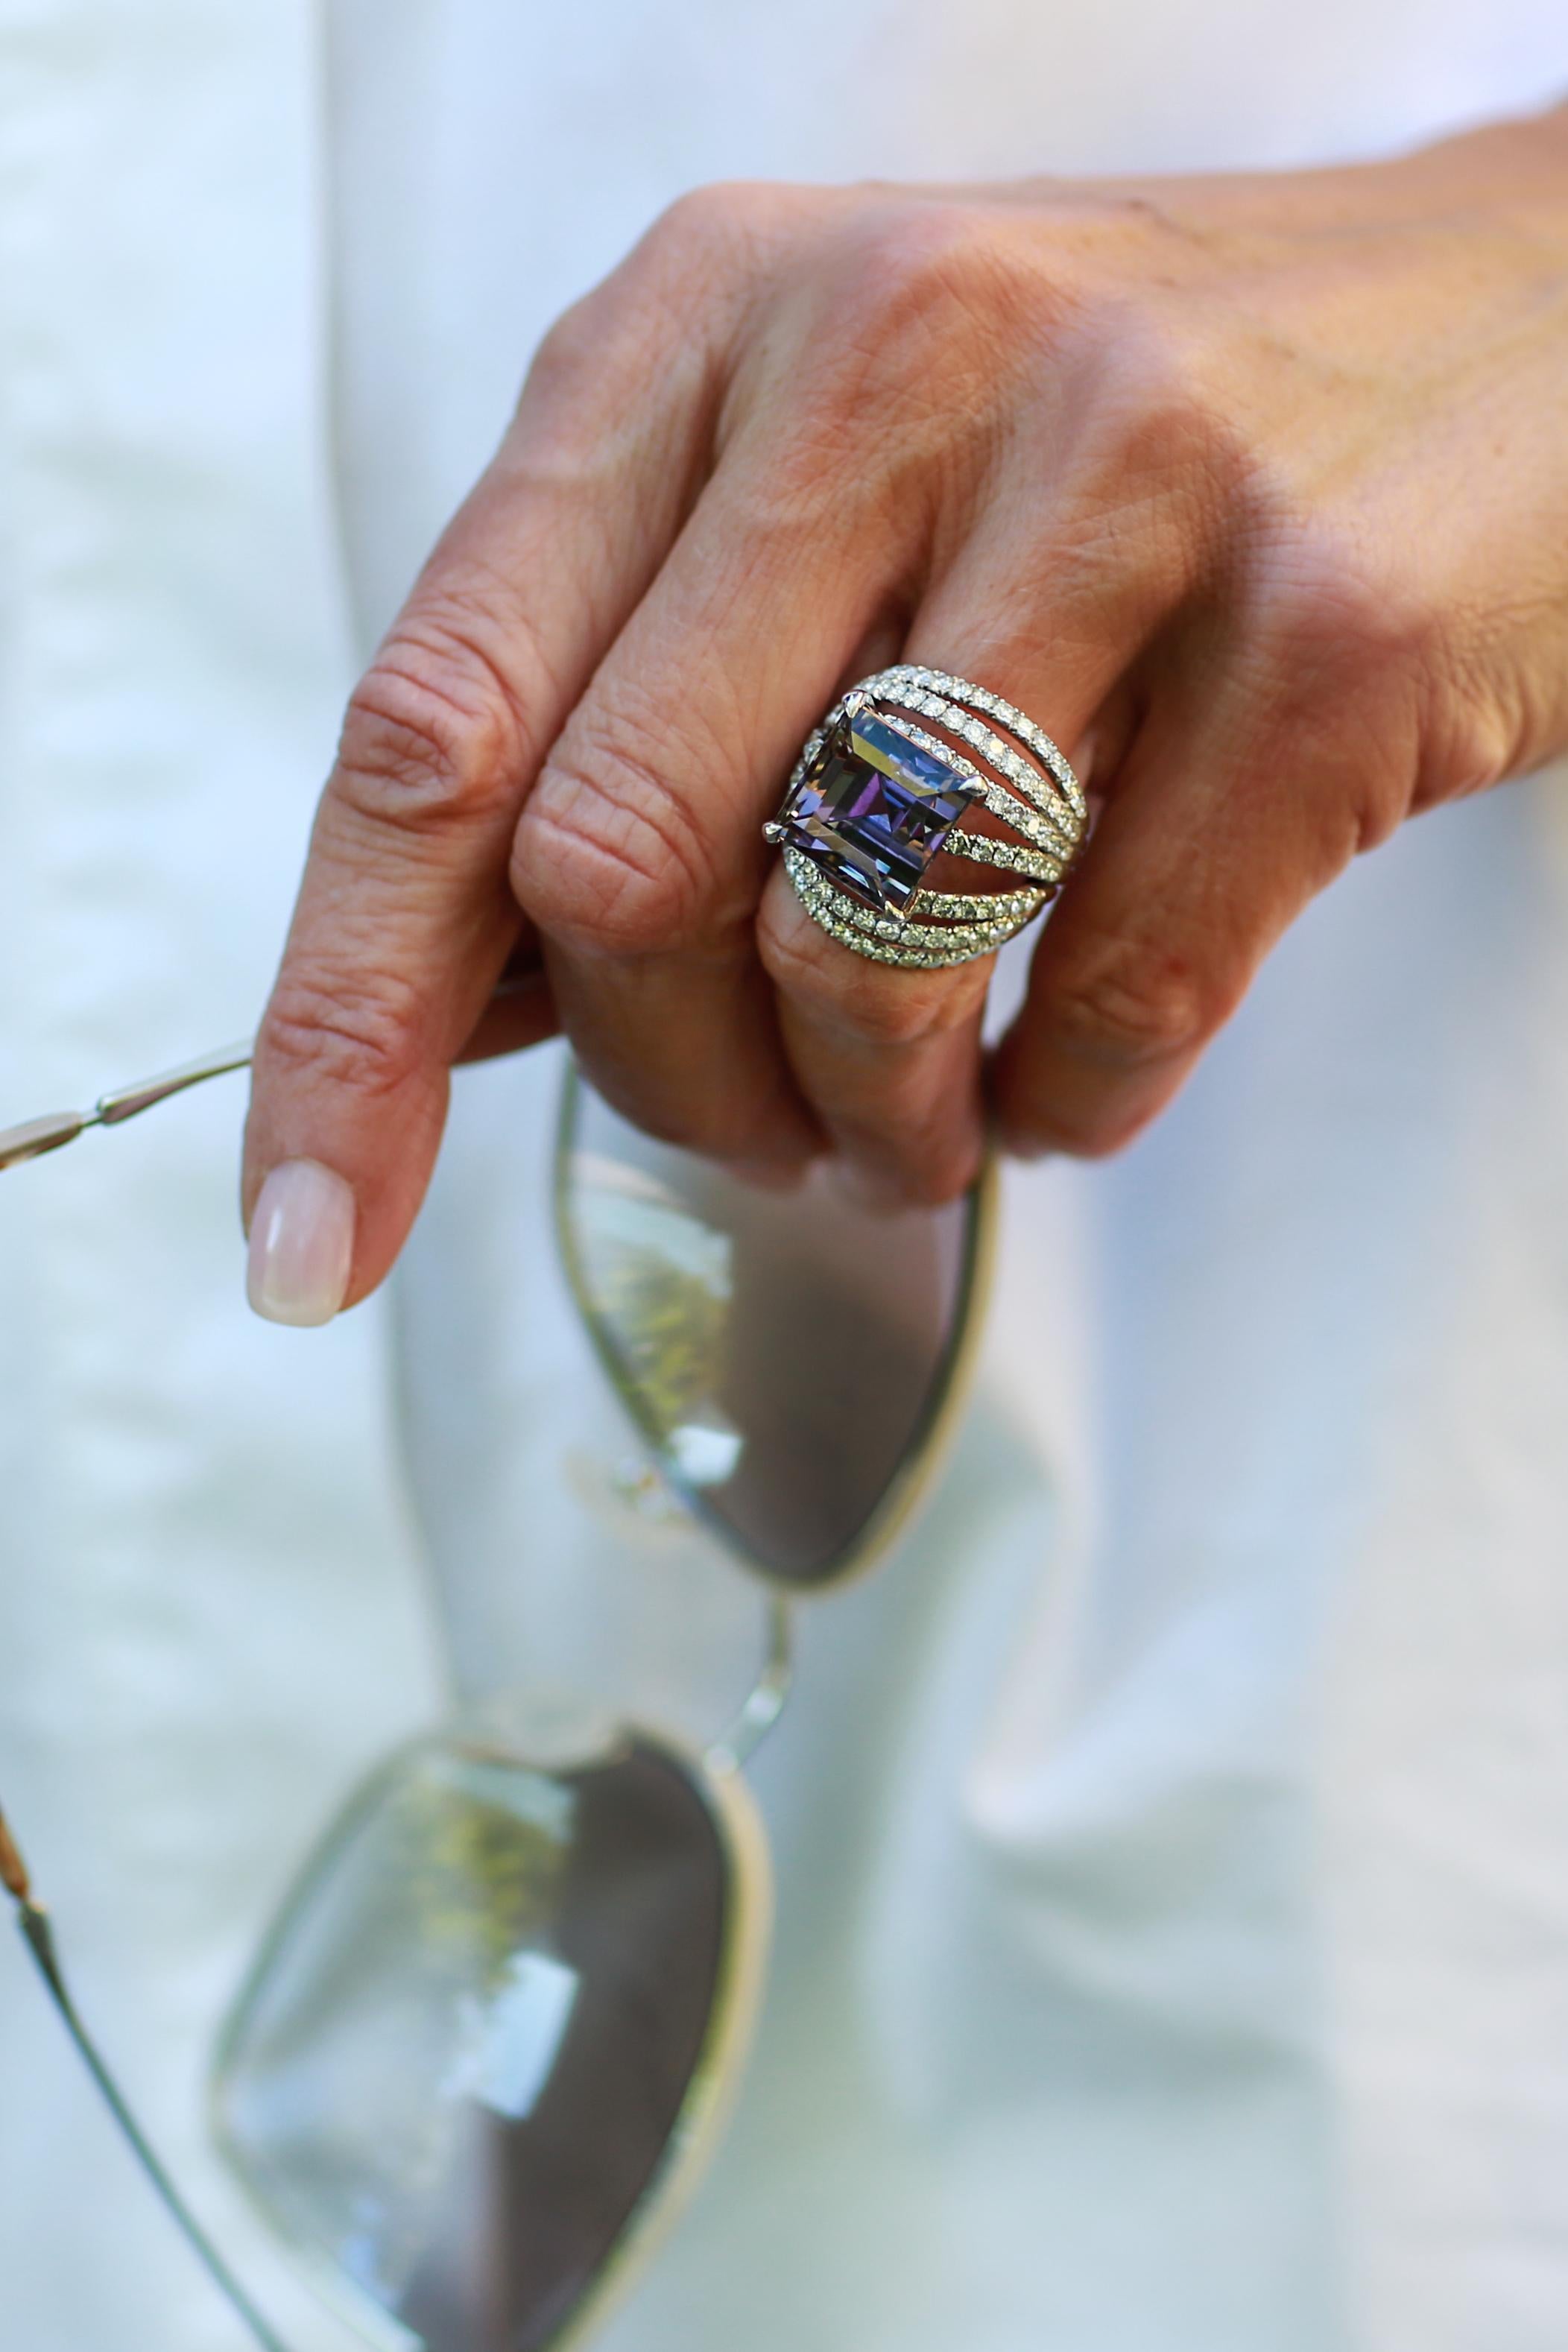 Dieser wunderschöne Ring ist handgefertigt aus Palladium mit weißen Diamanten und einem lila Tansanit.  mit rosa Saphiren

Edelstein: Violetter Tansanit 15,84ct.                                               
Pflasterung: Weiße Diamanten 2,16ct.